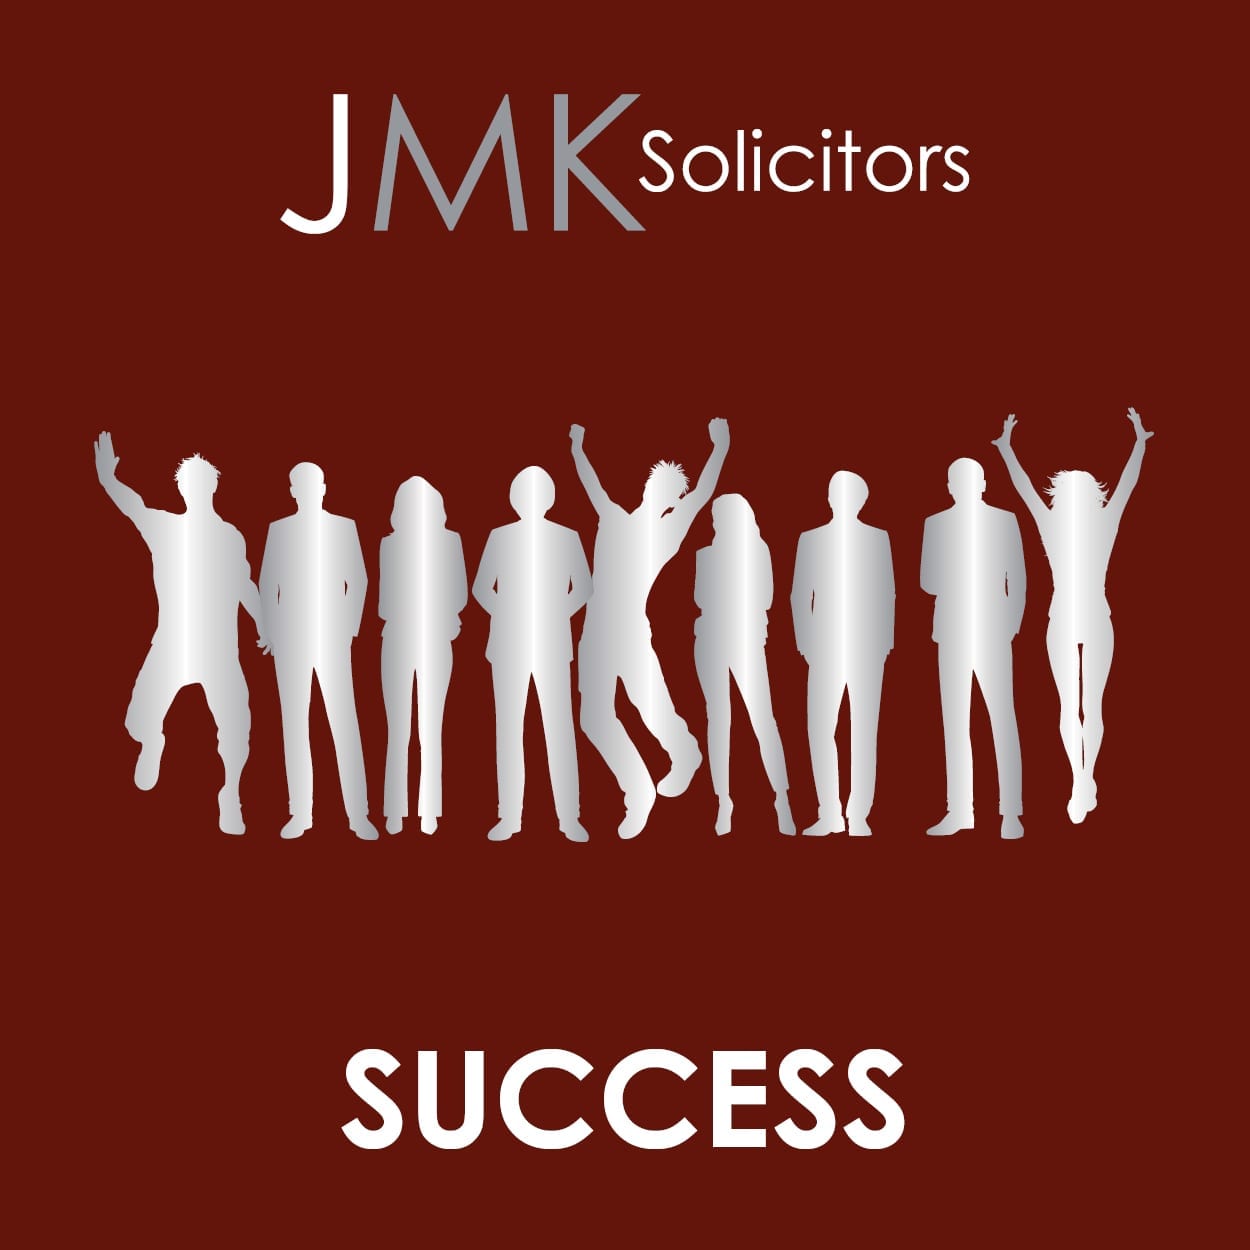 Success JMK Solicitors Values